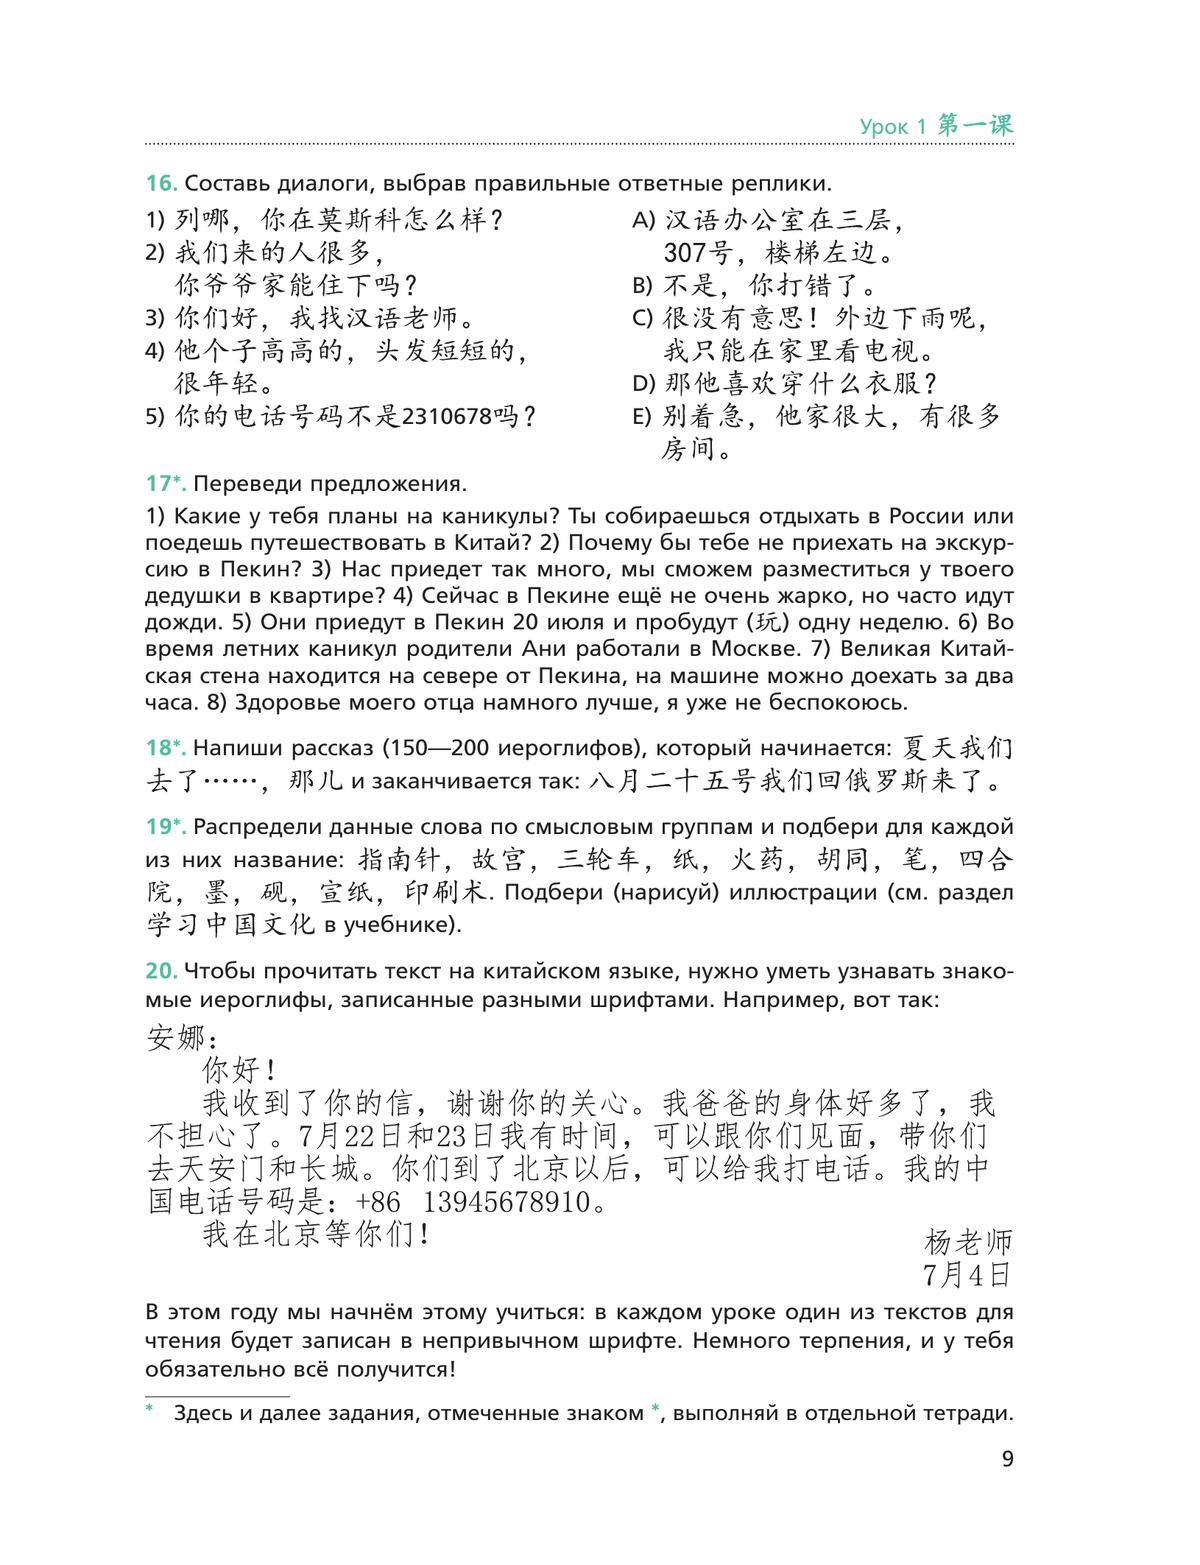 Китайский язык. Второй иностранный язык. Рабочая тетрадь. 8 класс 6